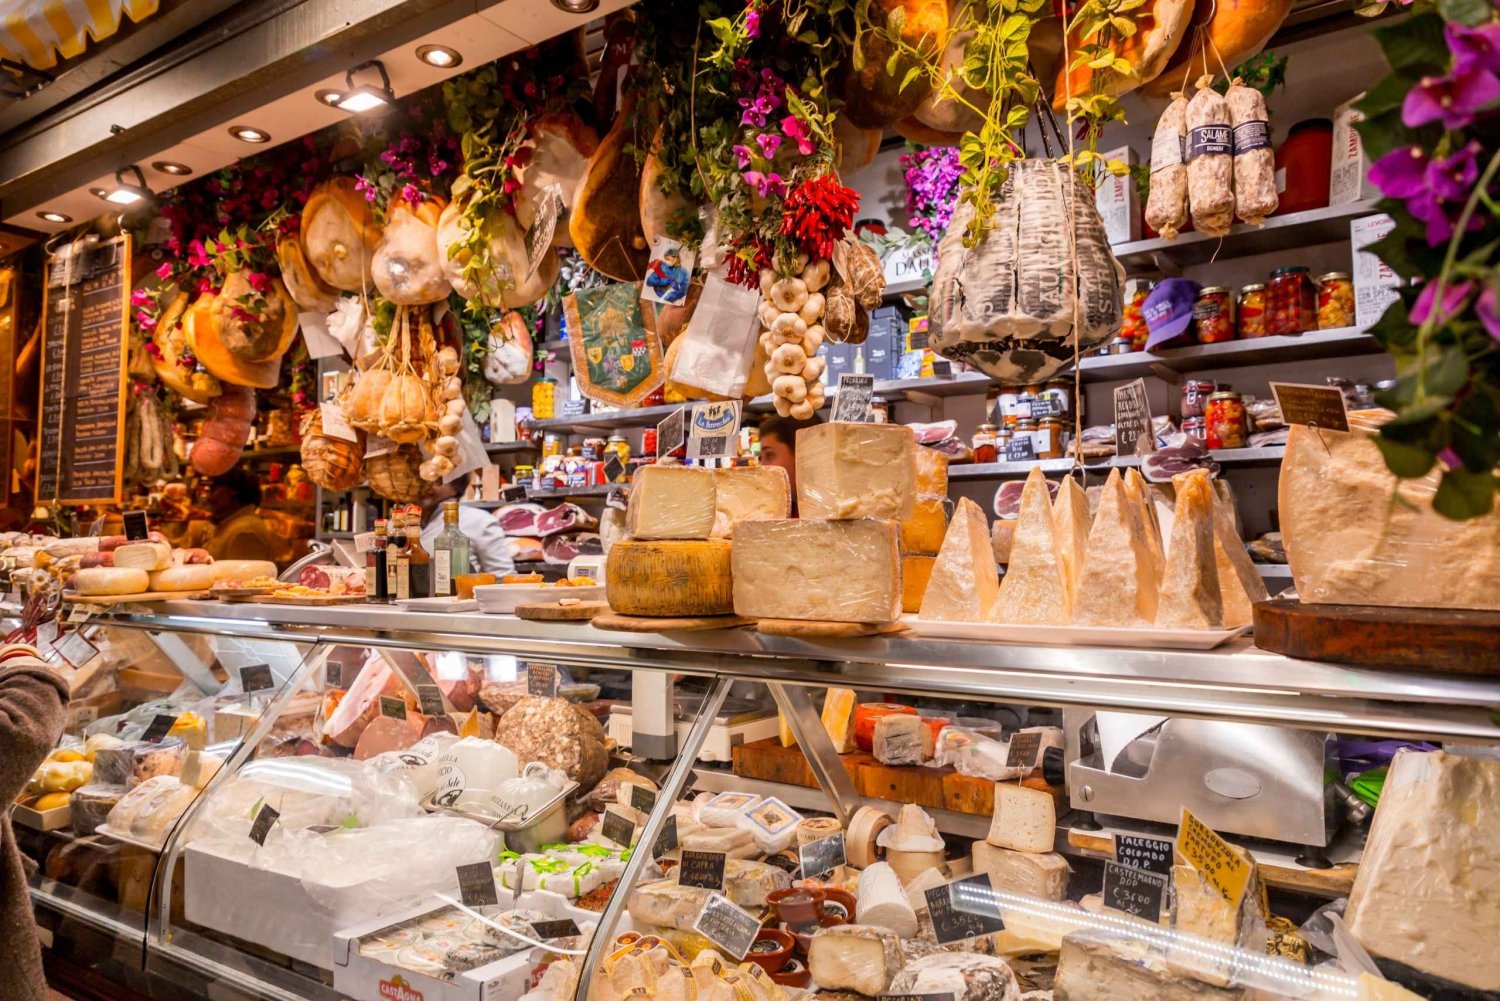 Excursão gastronômica no mercado central de Florença com a Eating Europe